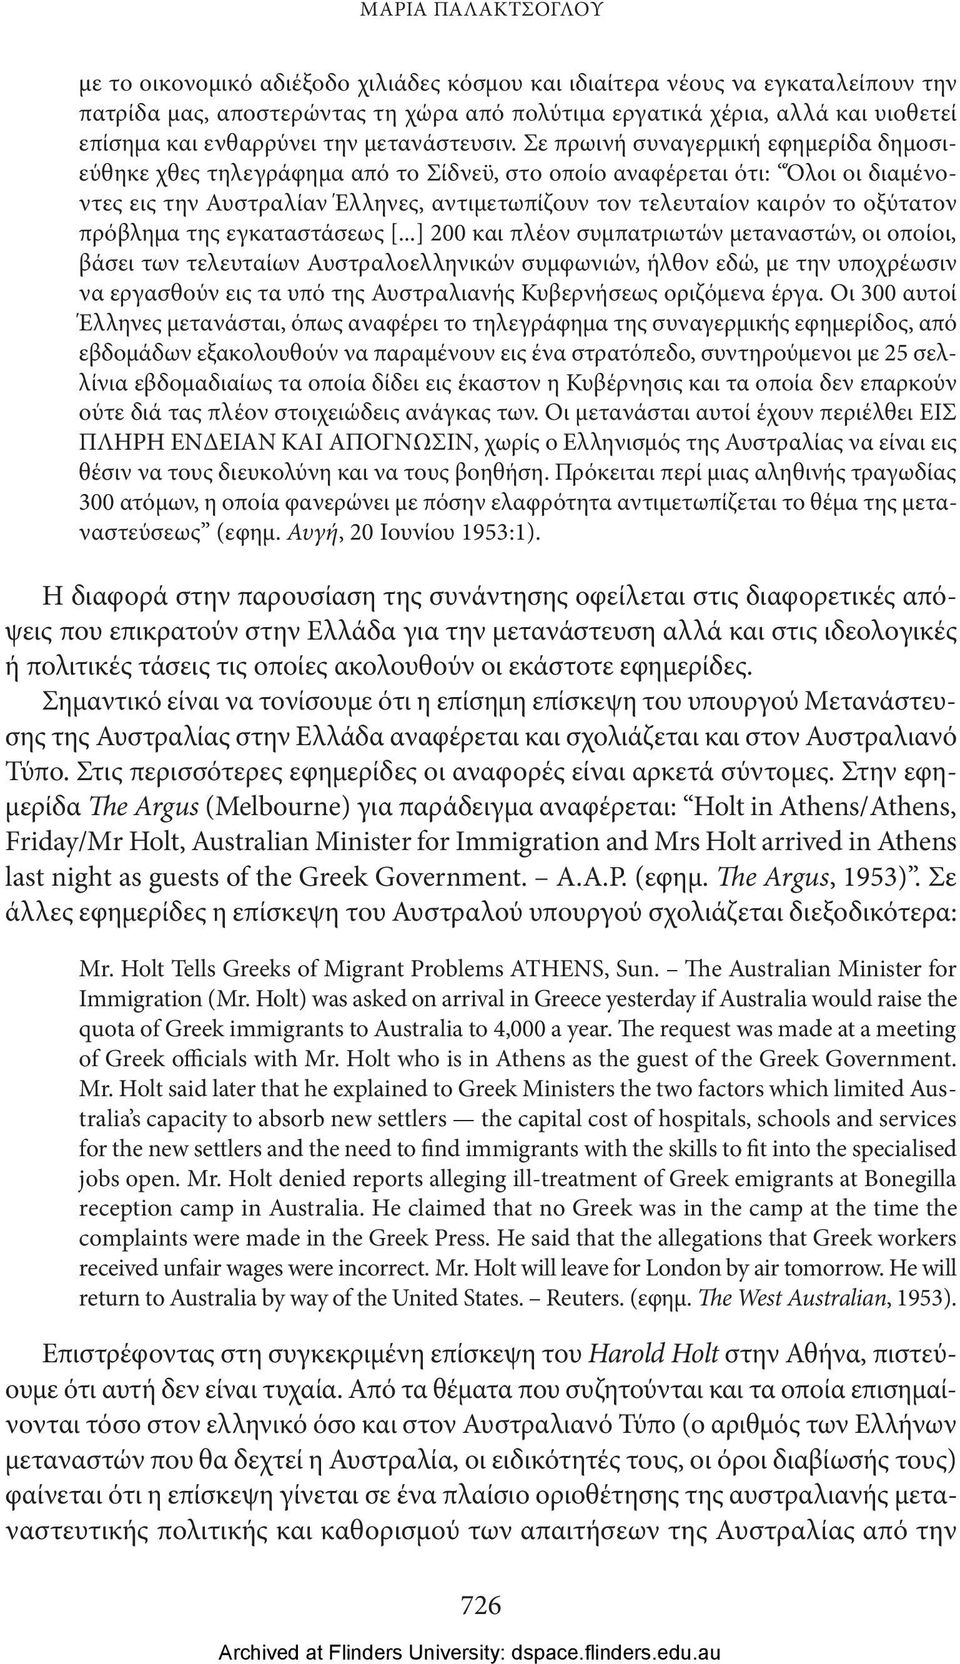 Σε πρωινή συναγερμική εφημερίδα δημοσιεύθηκε χθες τηλεγράφημα από το Σίδνεϋ, στο οποίο αναφέρεται ότι: Όλοι οι διαμένοντες εις την Αυστραλίαν Έλληνες, αντιμετωπίζουν τον τελευταίον καιρόν το οξύτατον